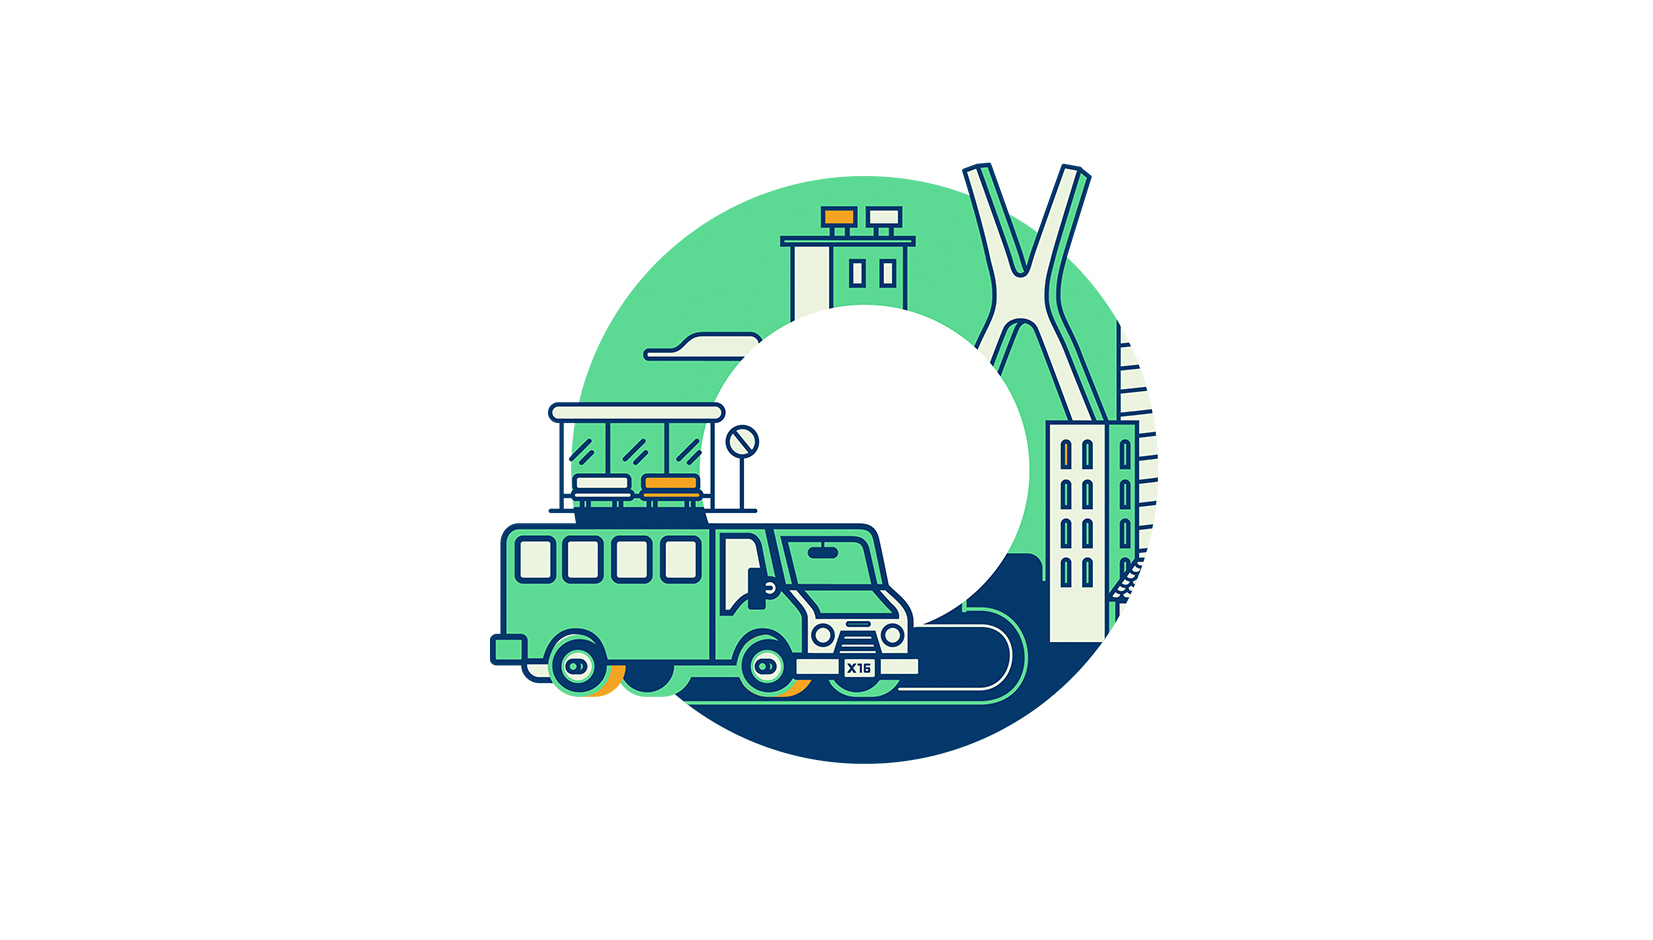 Aplicación gratuita, desarrollada por CodeandoMéxico, que busca mejorar los procesos de mapeo del transporte público.